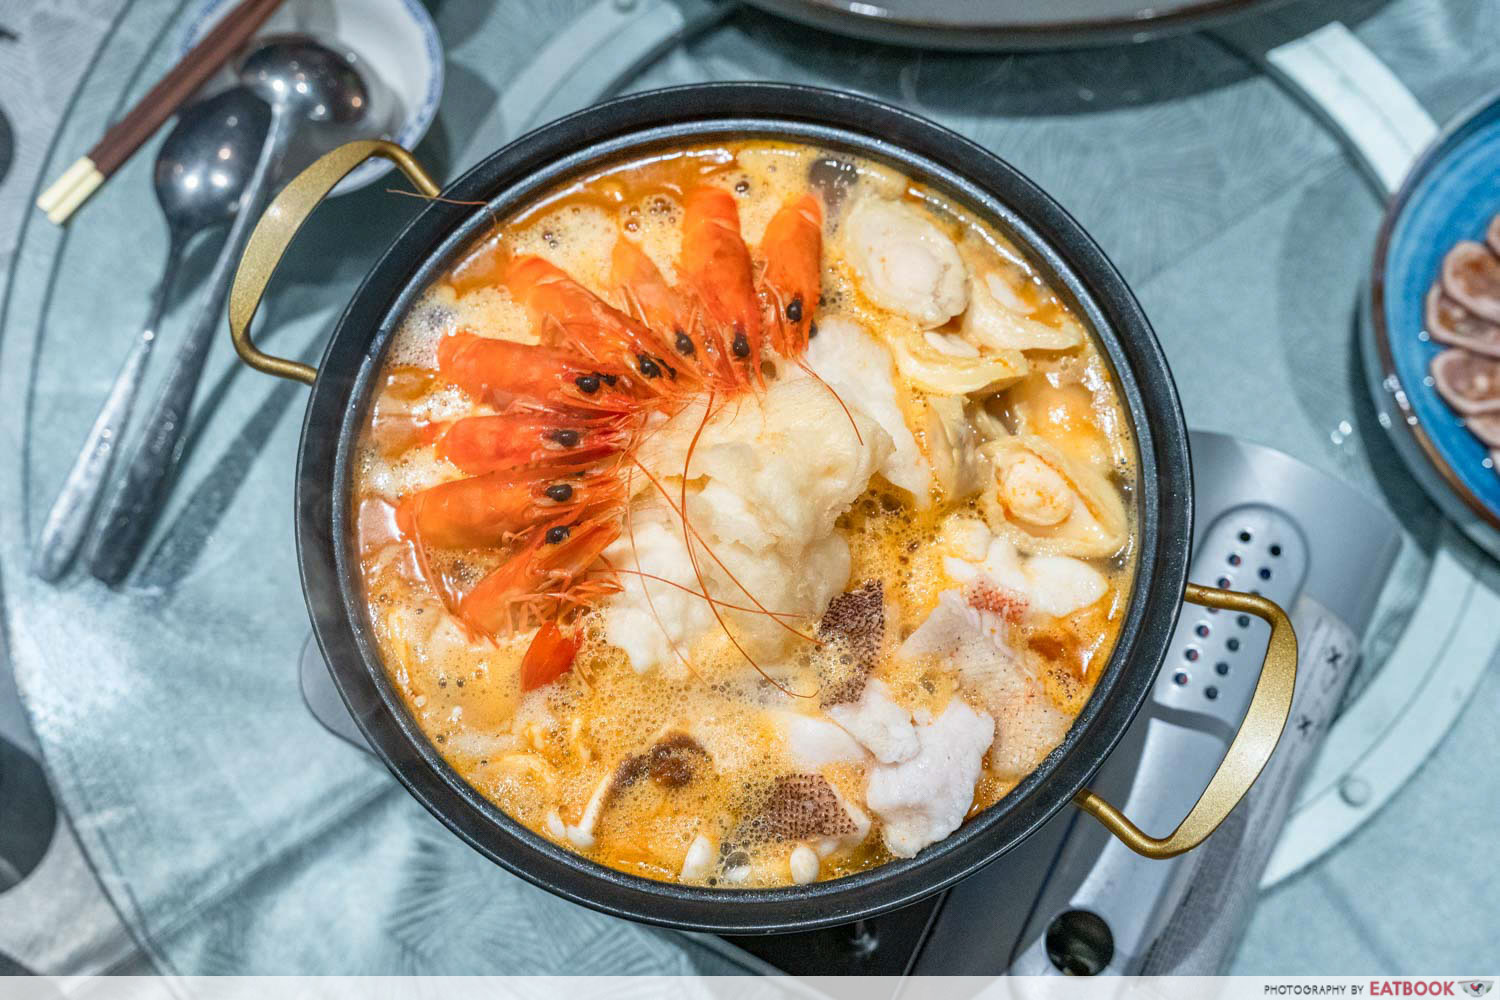 tan-xiang-yuan-signature-seafood-pot-establishment